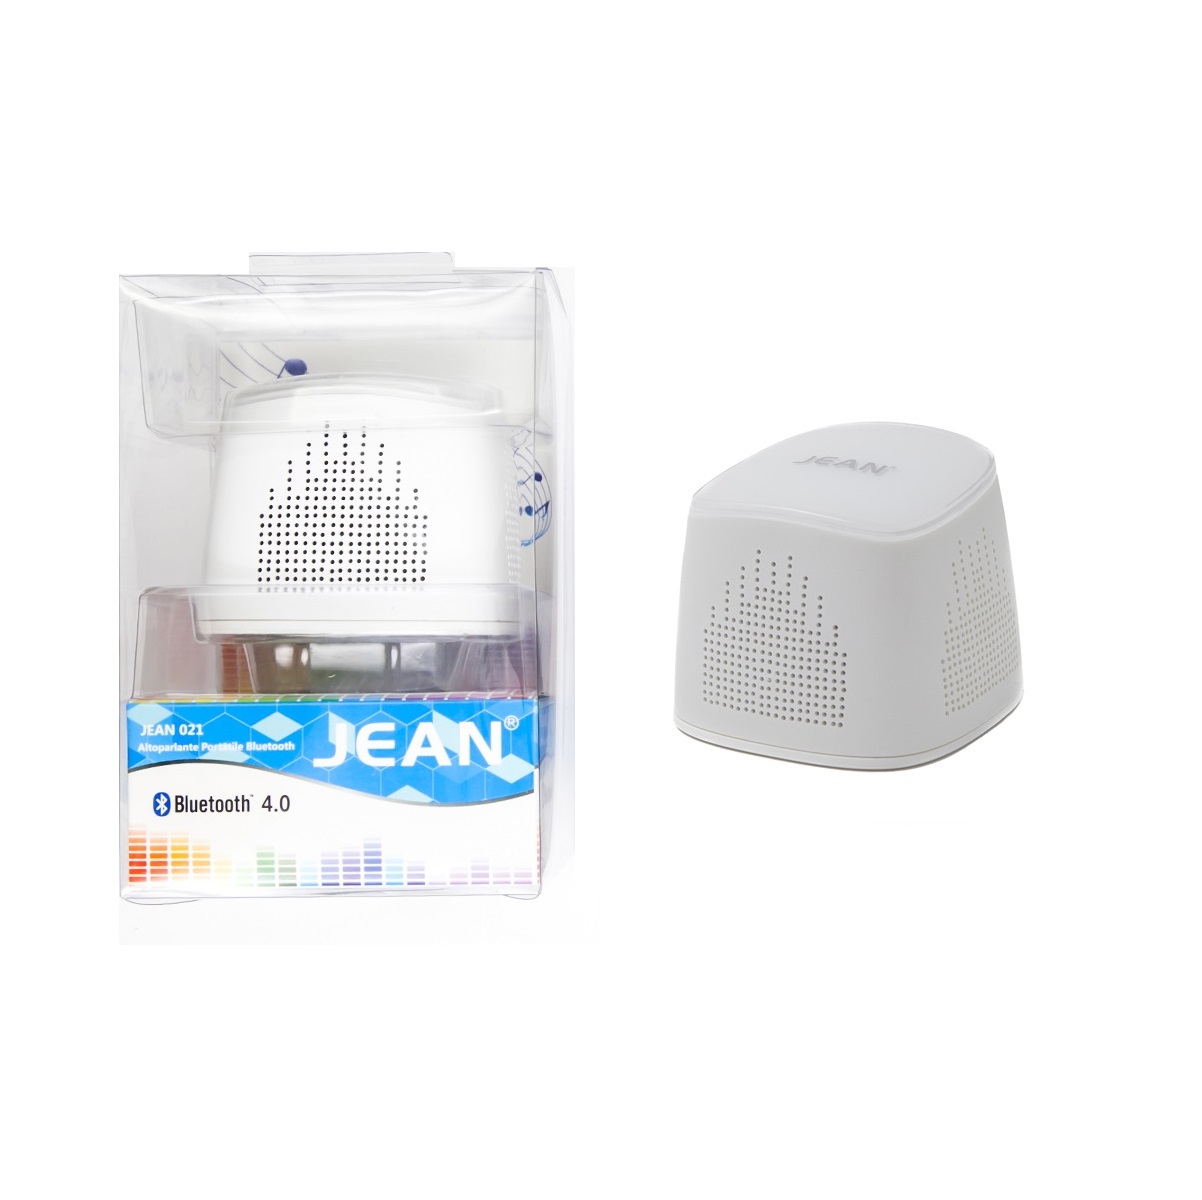 Jean Altoparlante 021 Audio Bluetooth 4.0 white-Vendita online all 